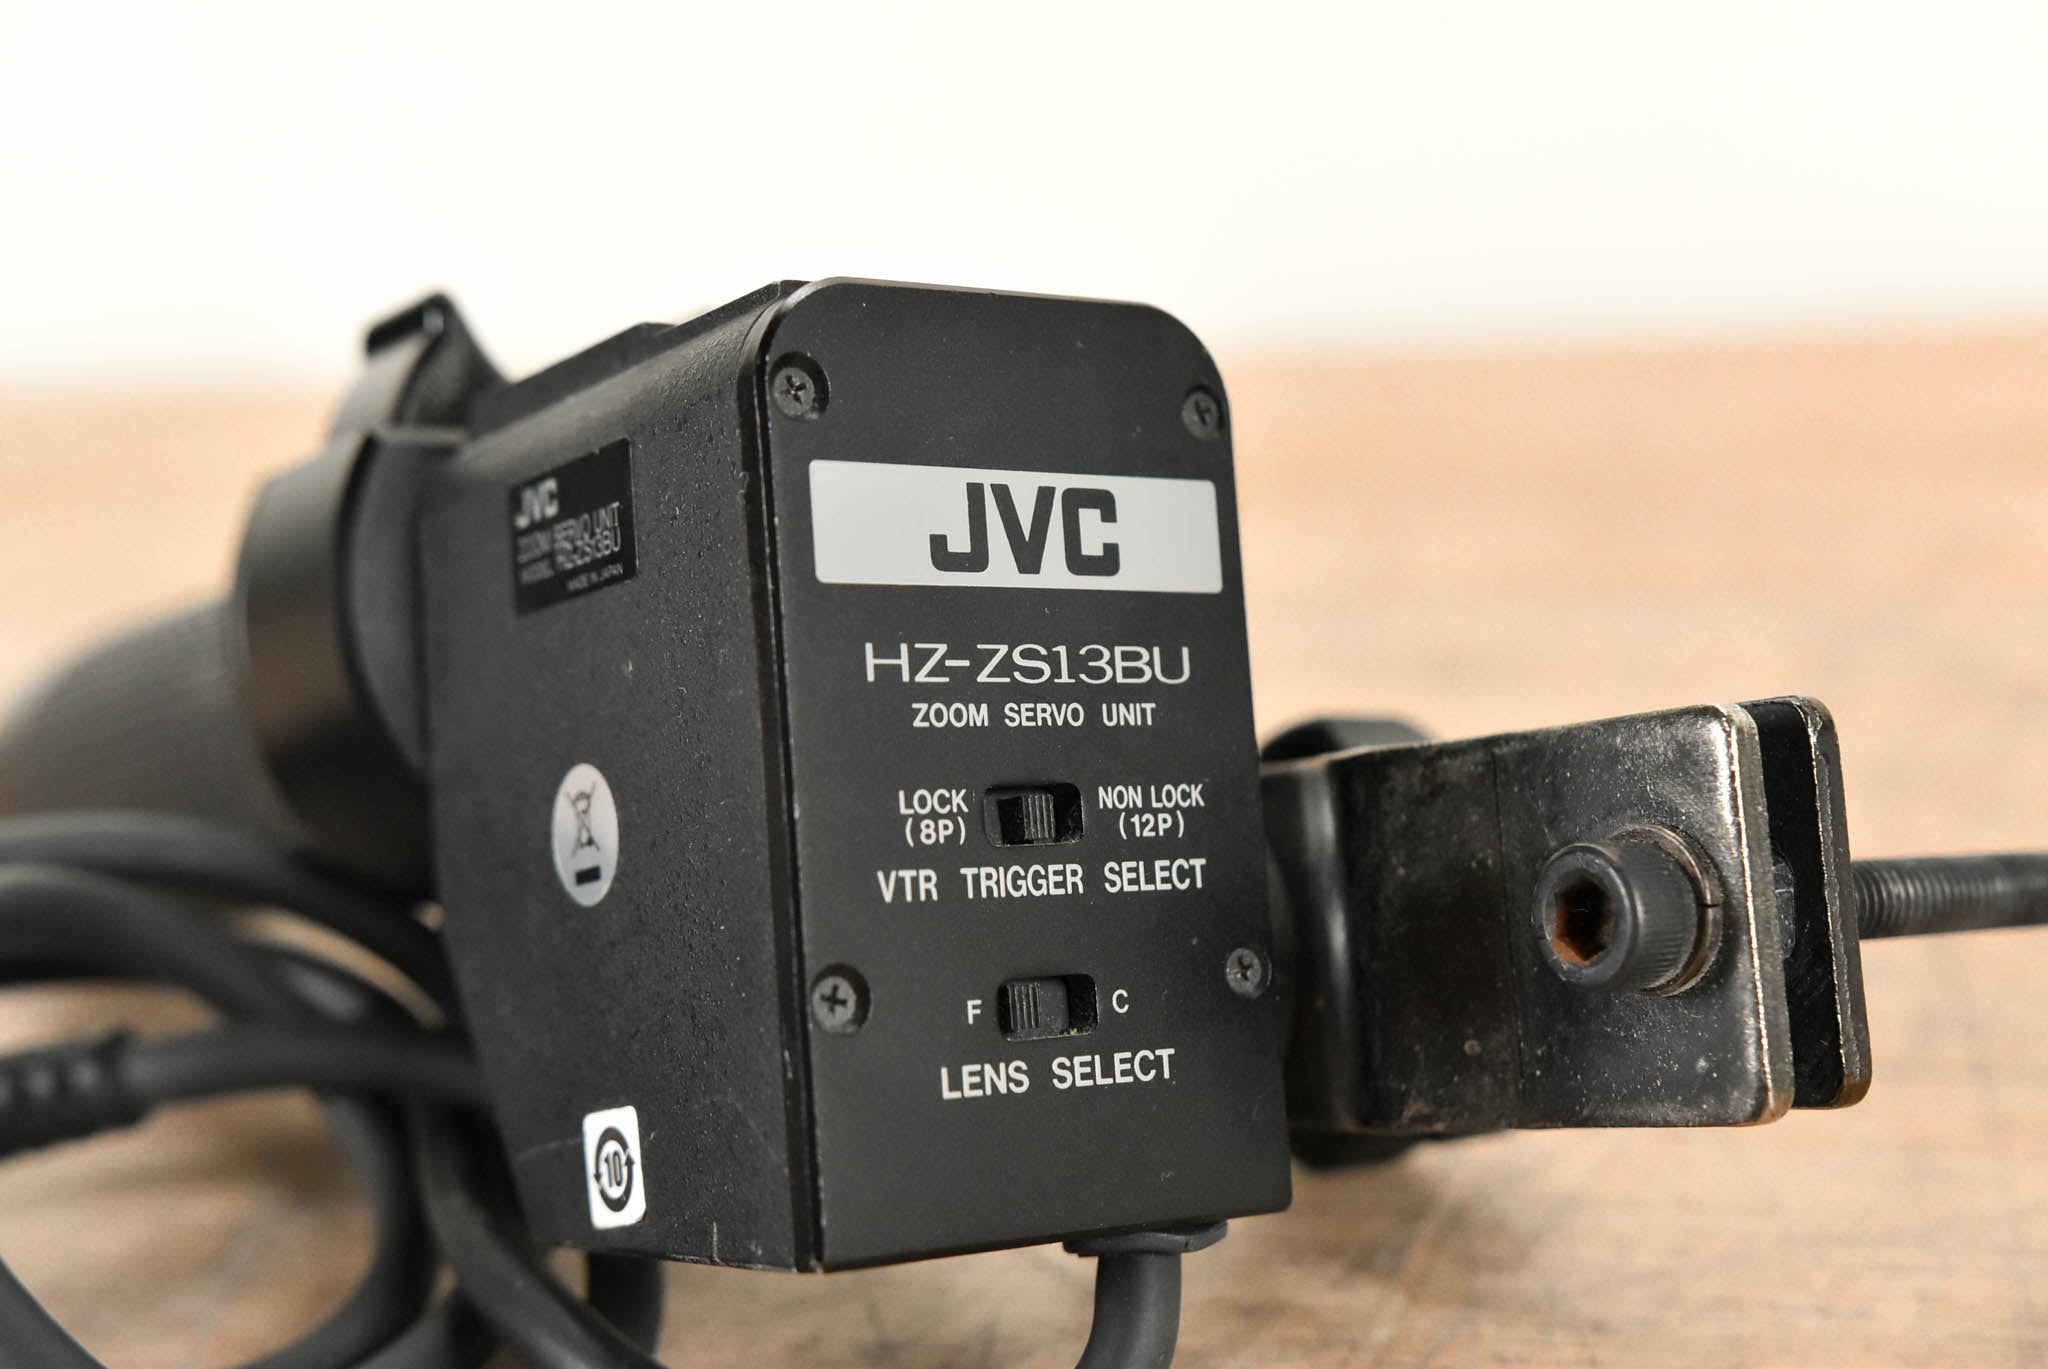 JVC HZ-ZS13BU Zoom Servo Lens Control